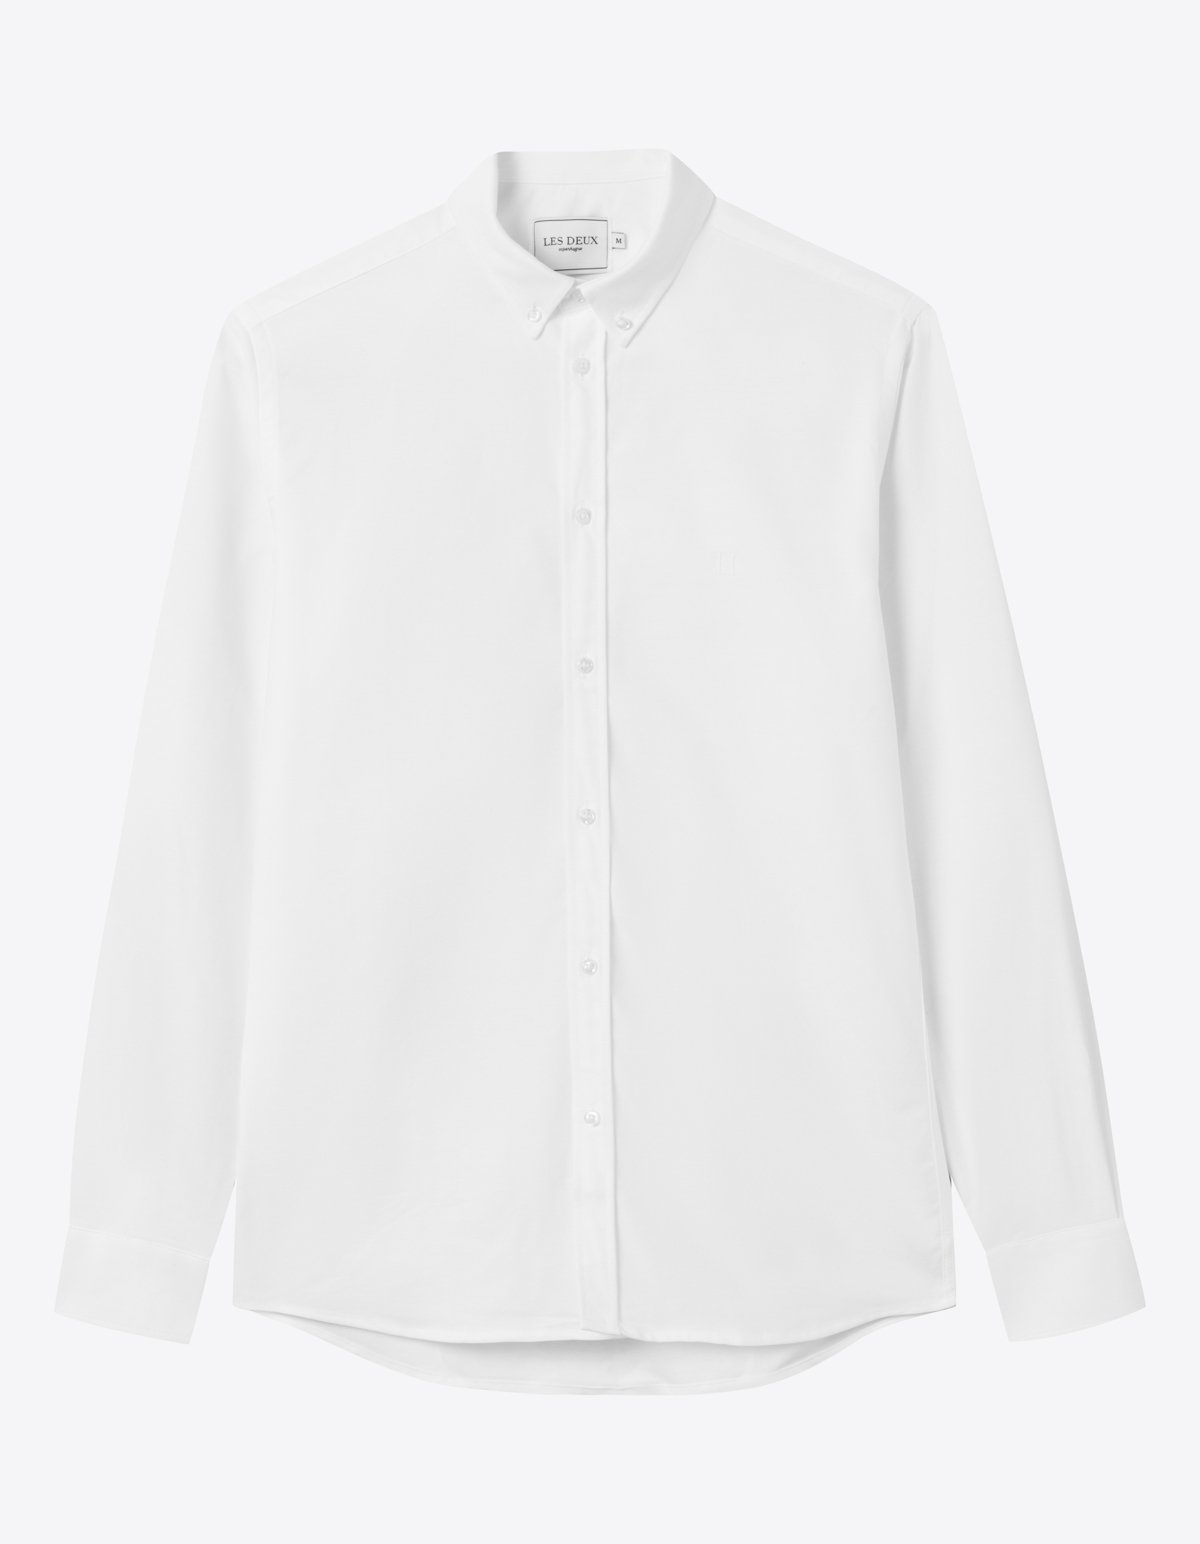 christoph_20oxford_20shirt-shirt-ldm410021-2020-white-5_1200x1544